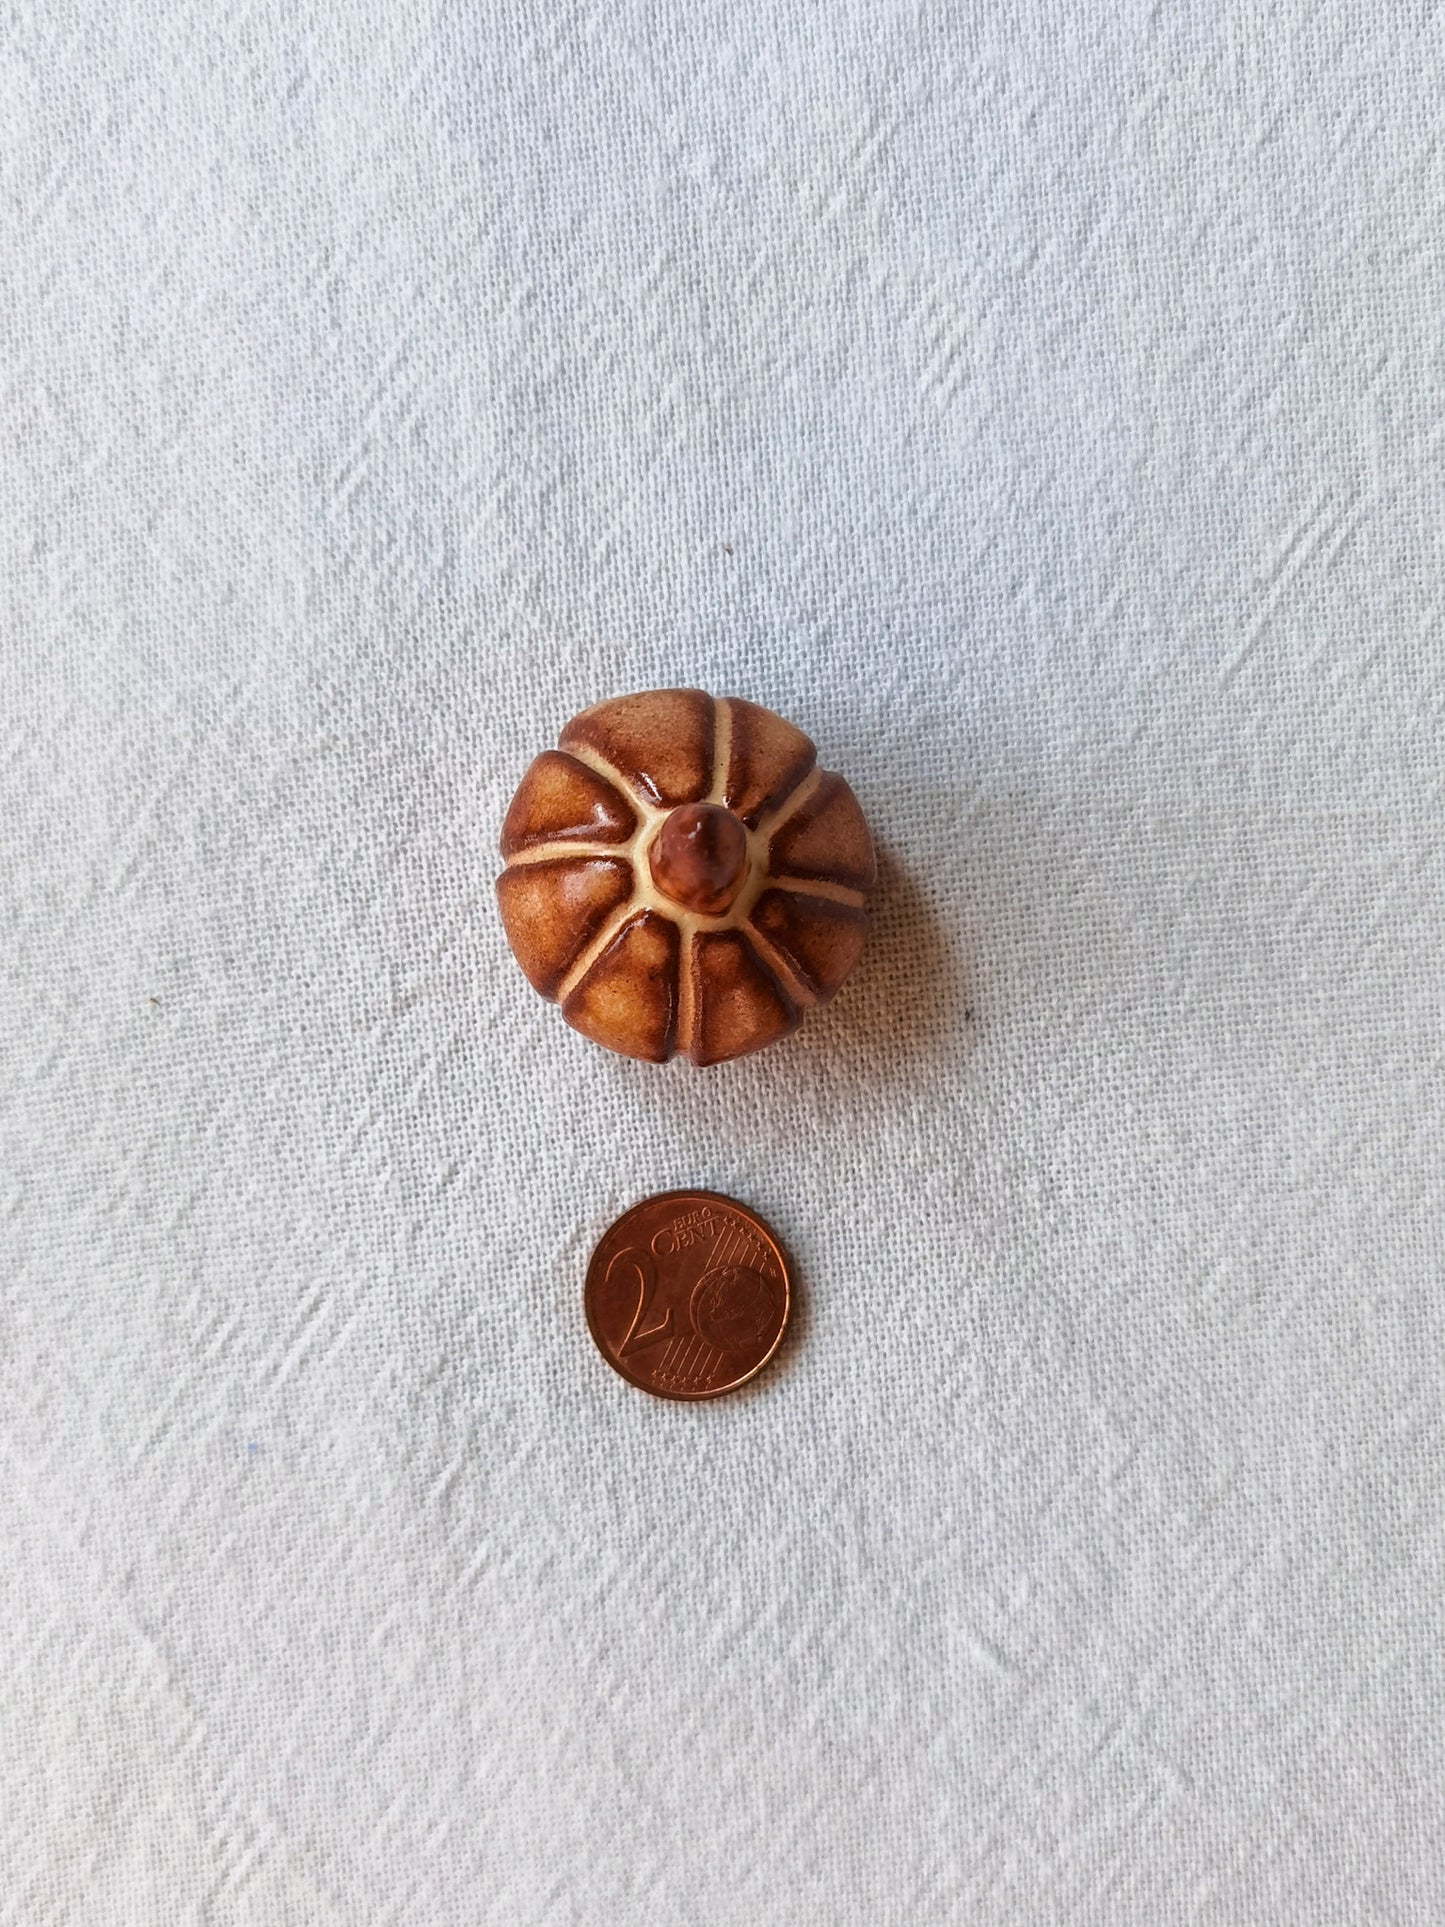 Mini pumpkin #10